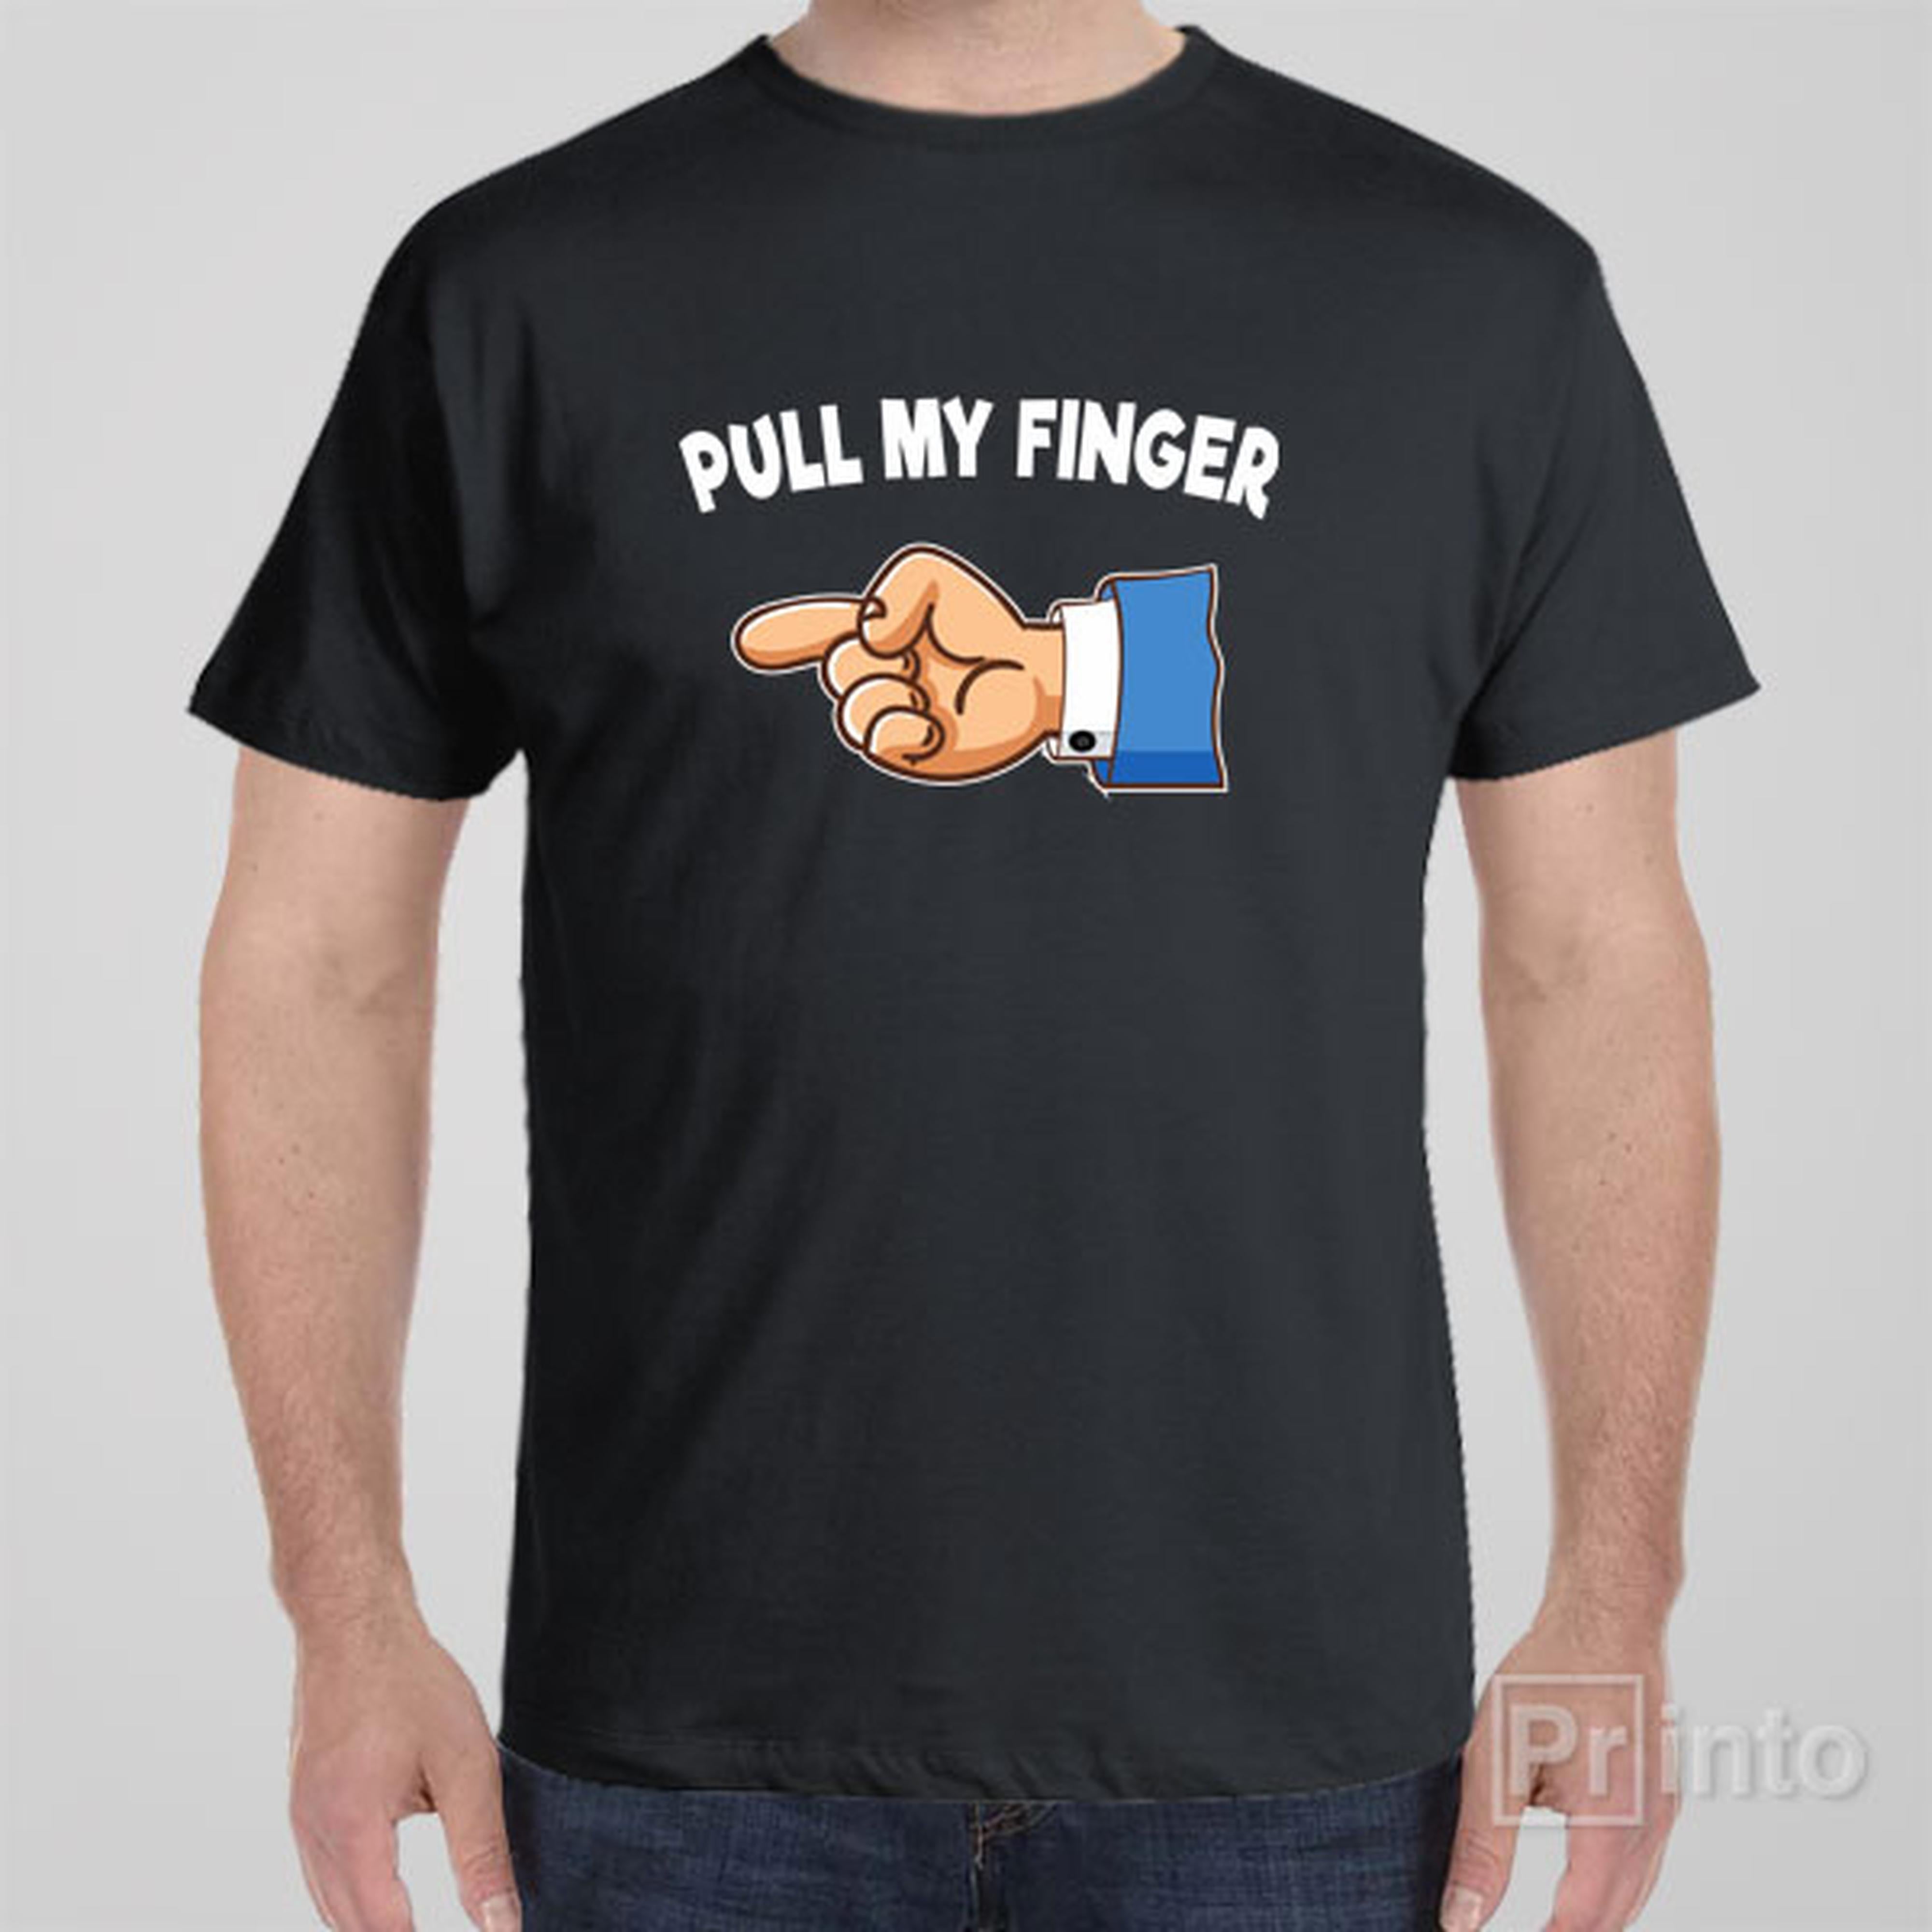 pull-my-finger-t-shirt